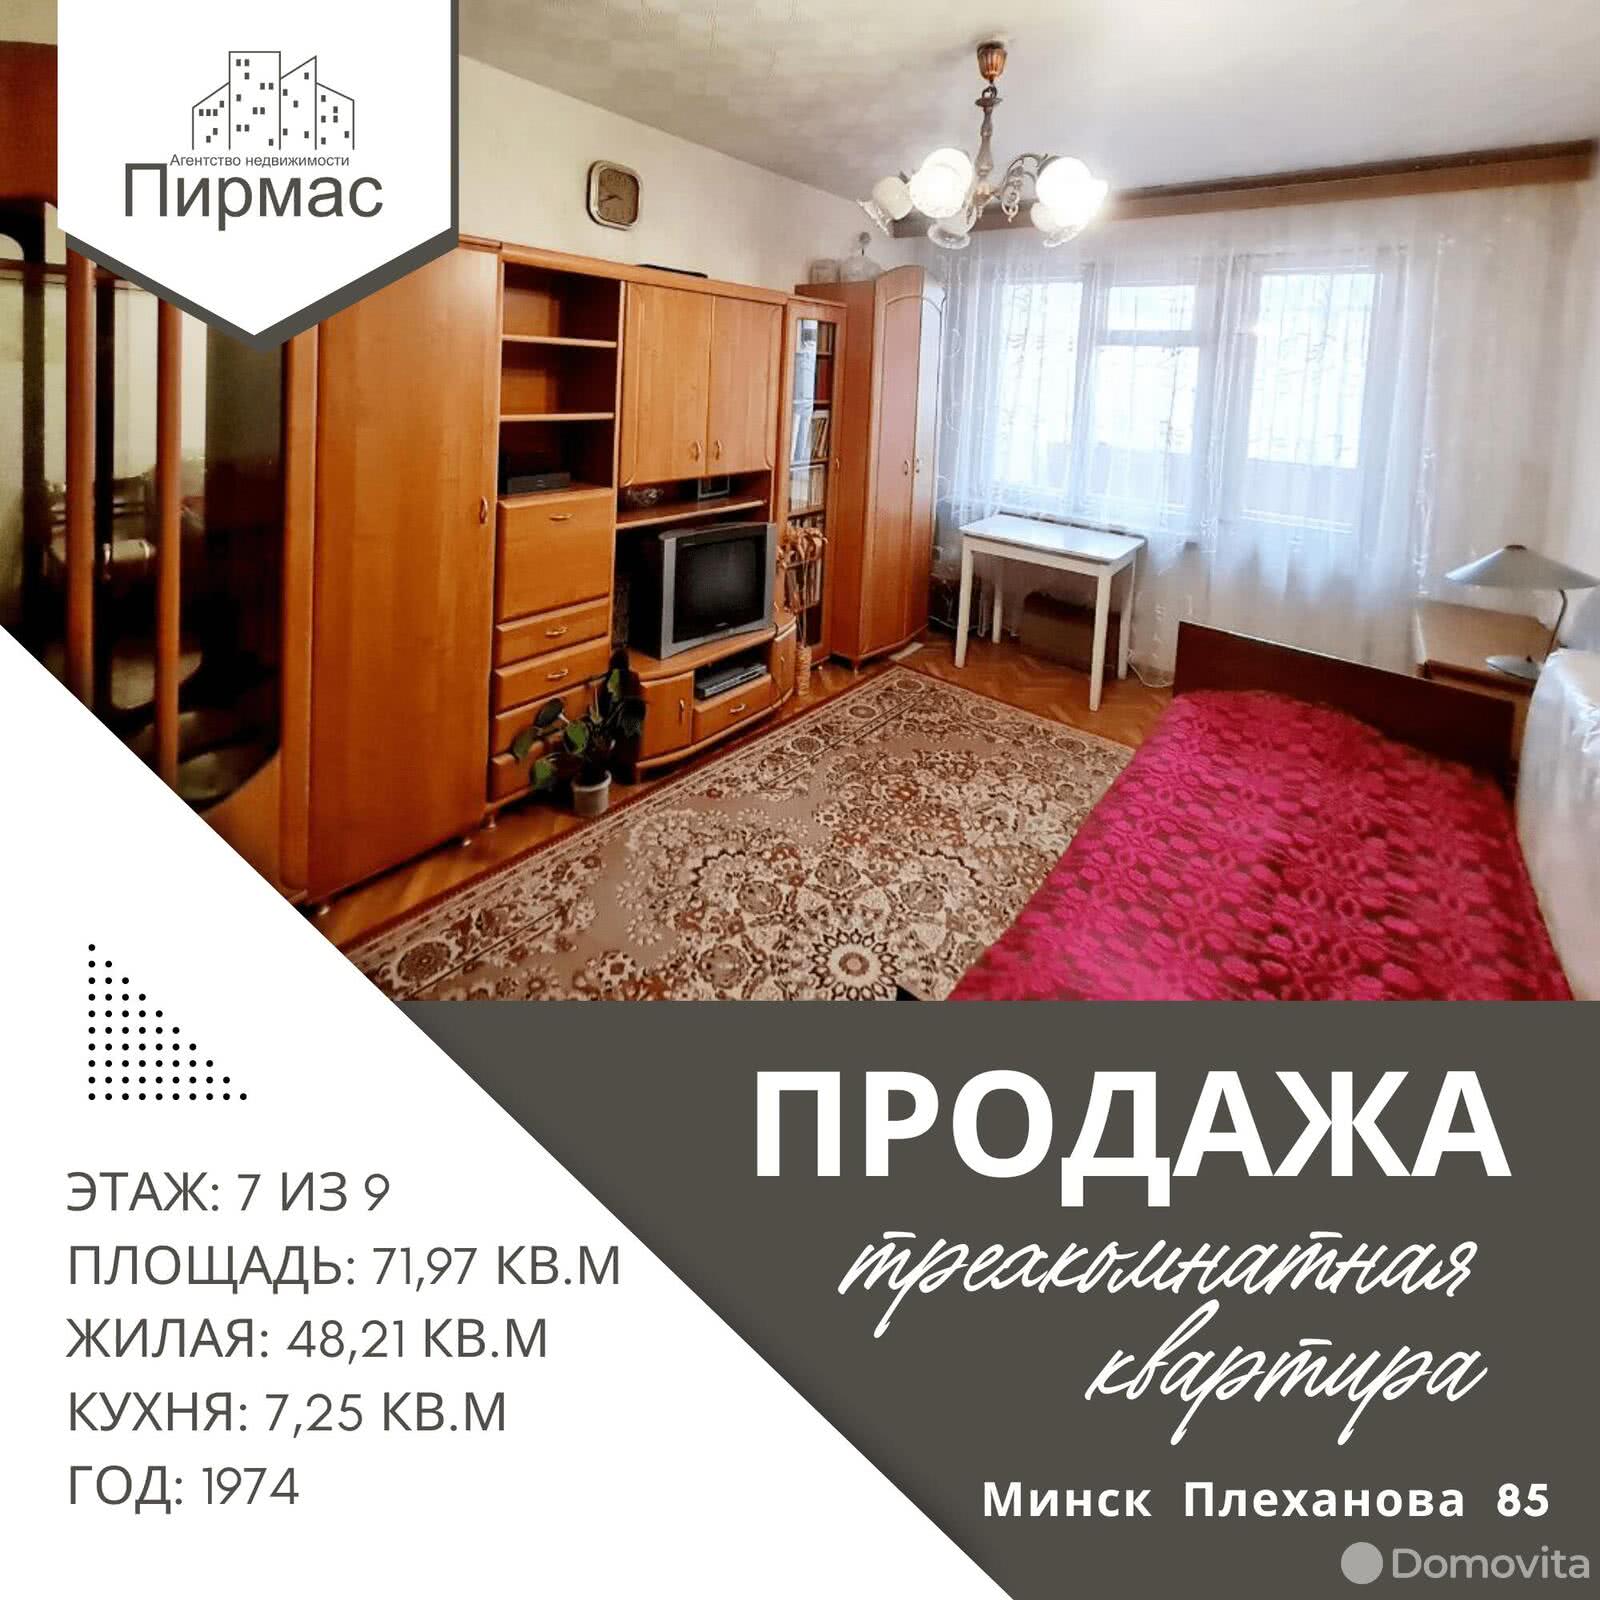 Стоимость продажи квартиры, Минск, ул. Плеханова, д. 85